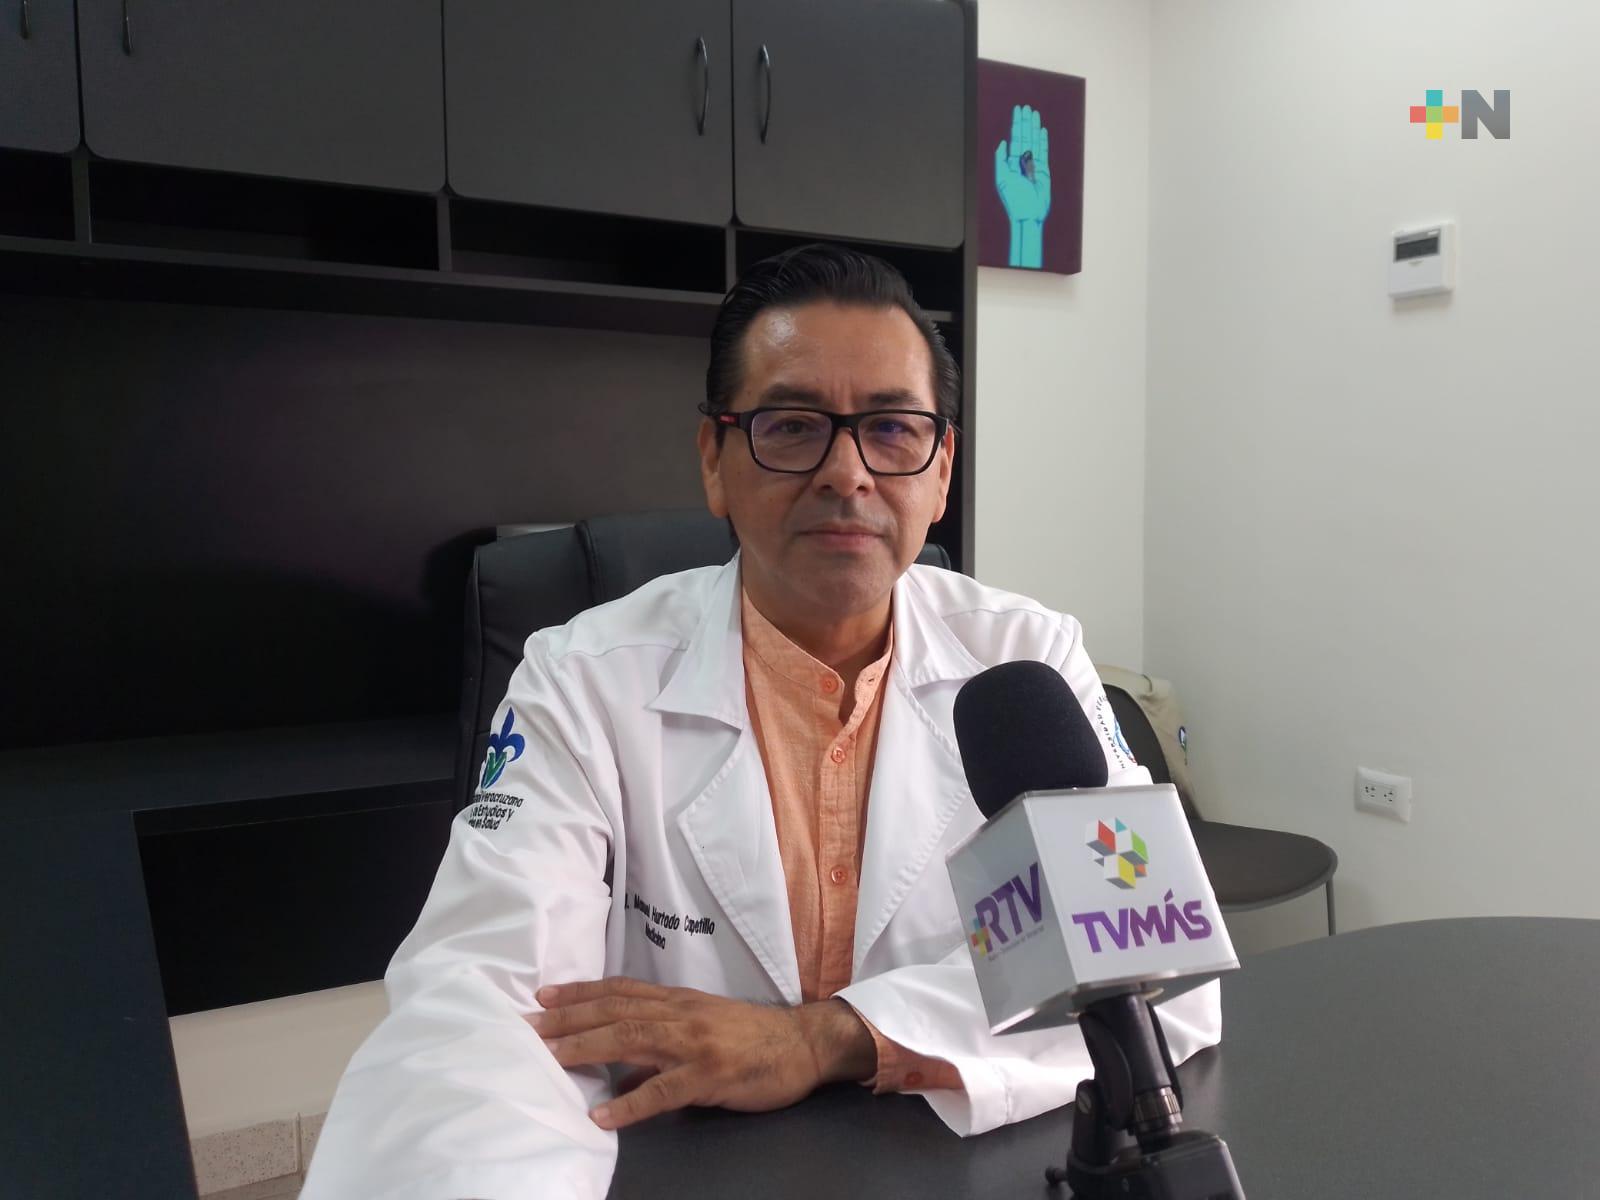 Servicios de salud de UV aplica cinco pruebas Covid al día en región Veracruz